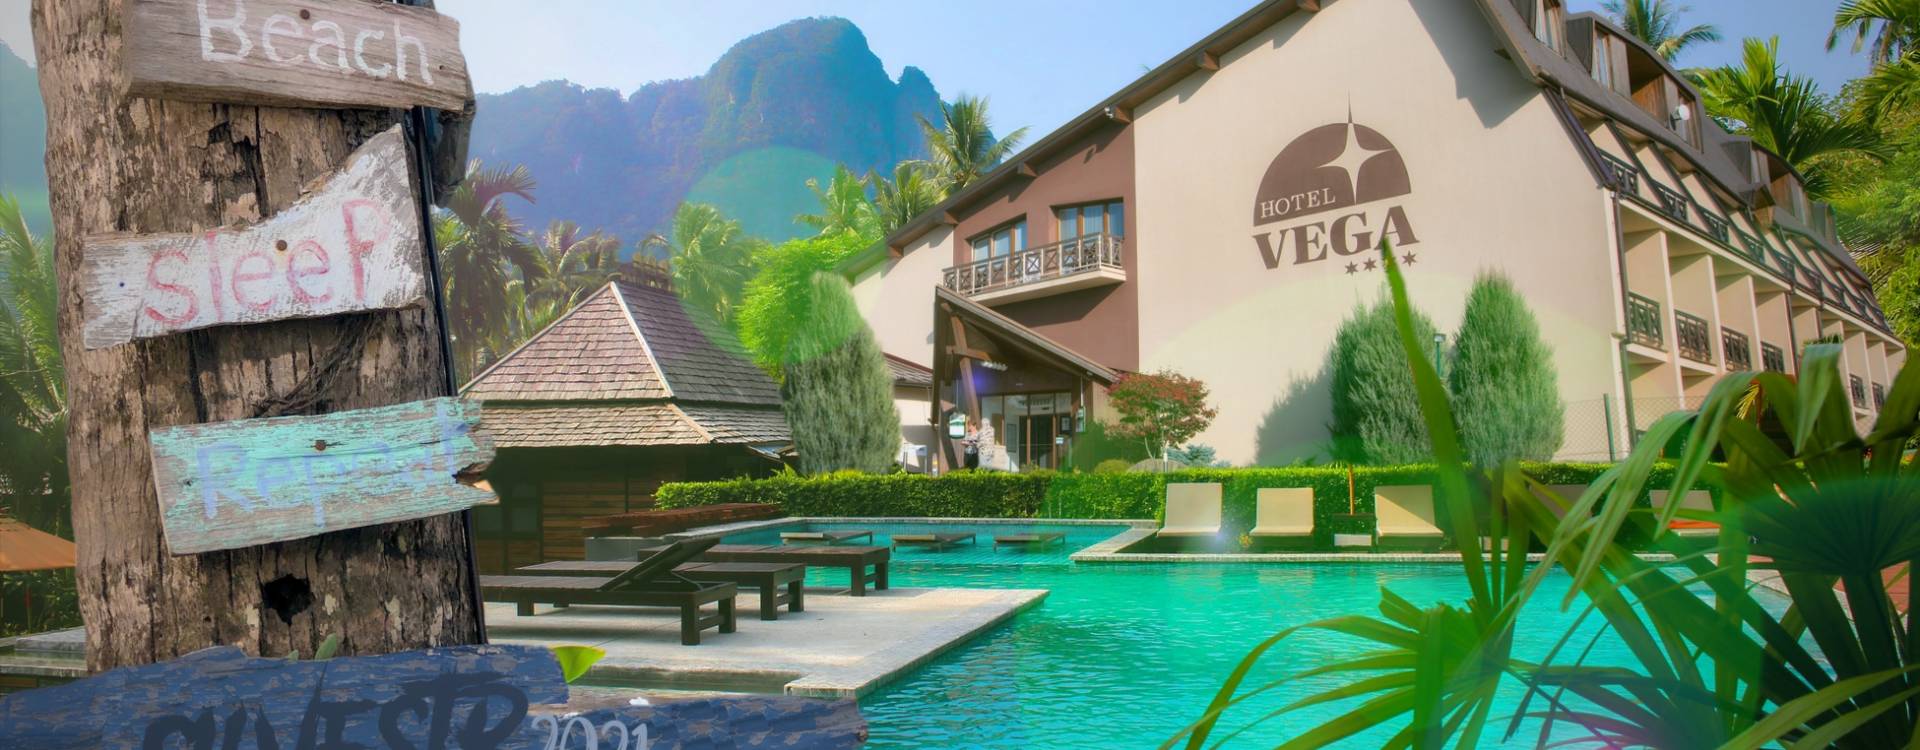 Hotel Vega **** - Silvestrovský pobyt Karibik 5 dní